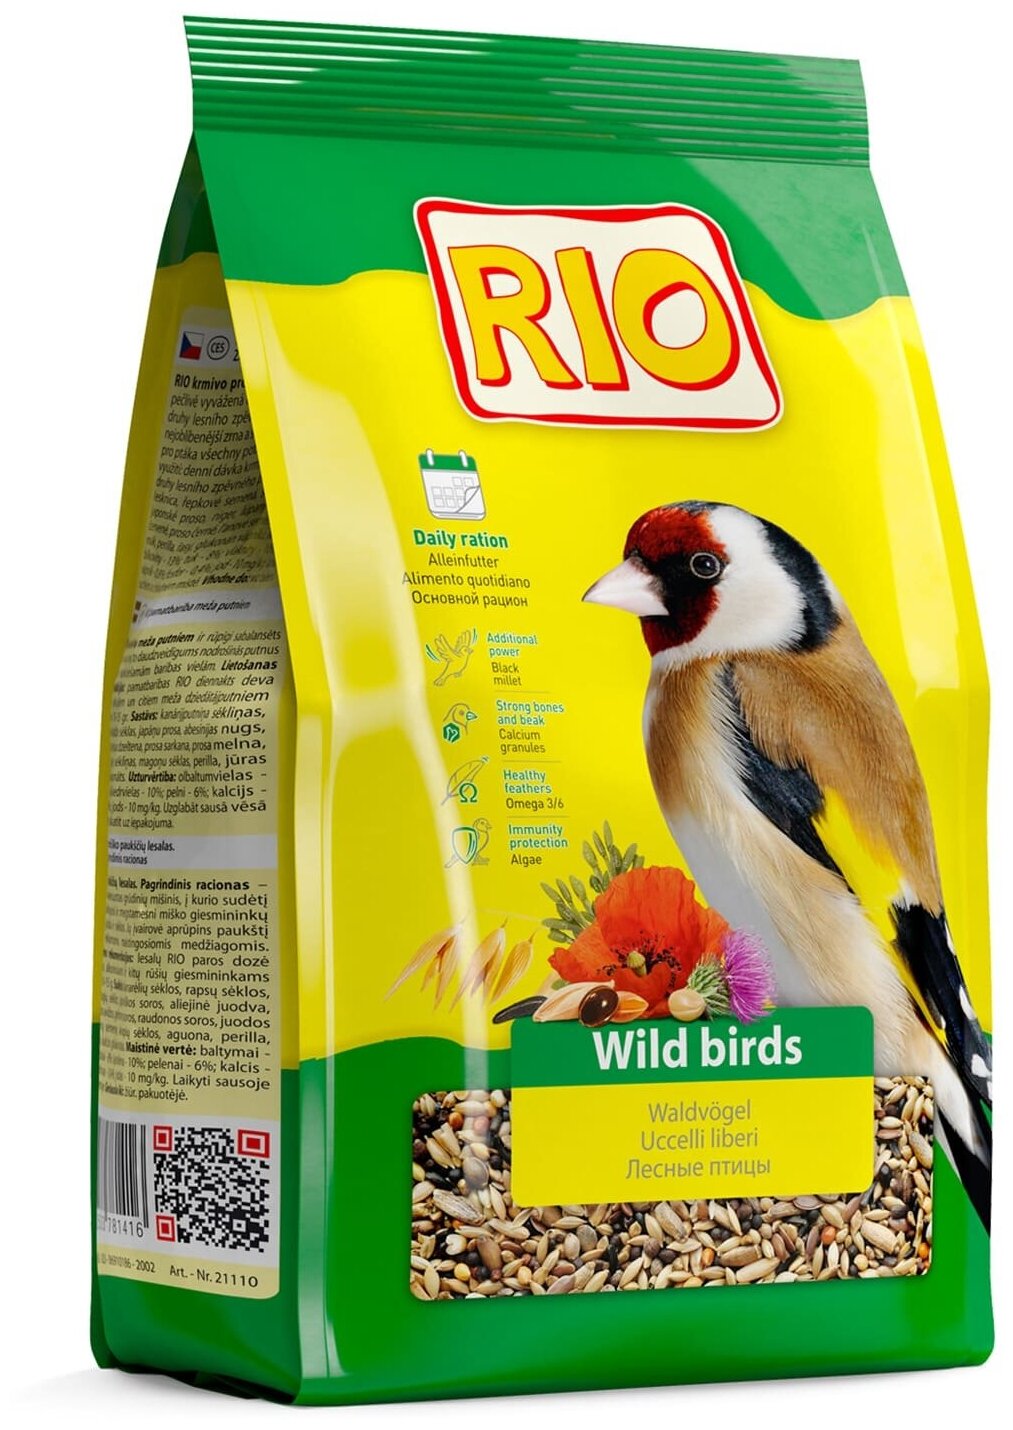 RIO Корм для лесных певчих птиц. Основной рацион, 500 г